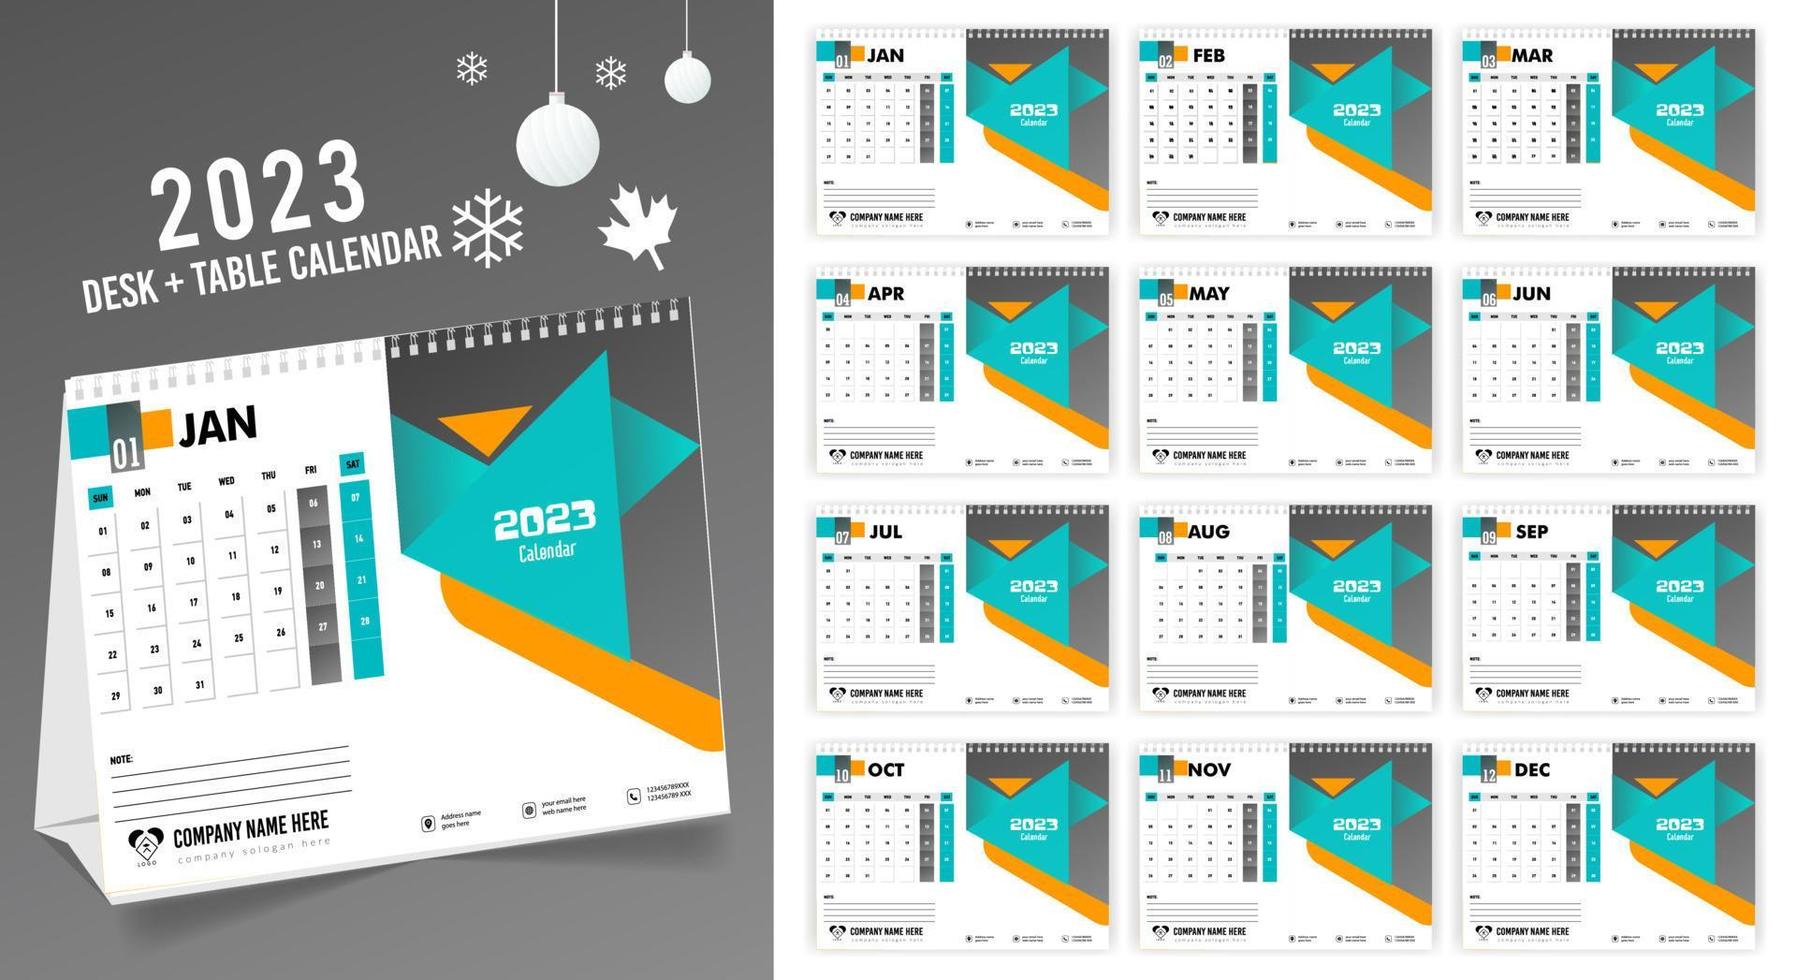 calendário de mesa 2023 design criativo, layout de data vertical mensal simples para 2023 anos em inglês. Modelos de calendário de 12 meses, design de calendário de mesa moderno. calendário corporativo ou empresarial. vetor